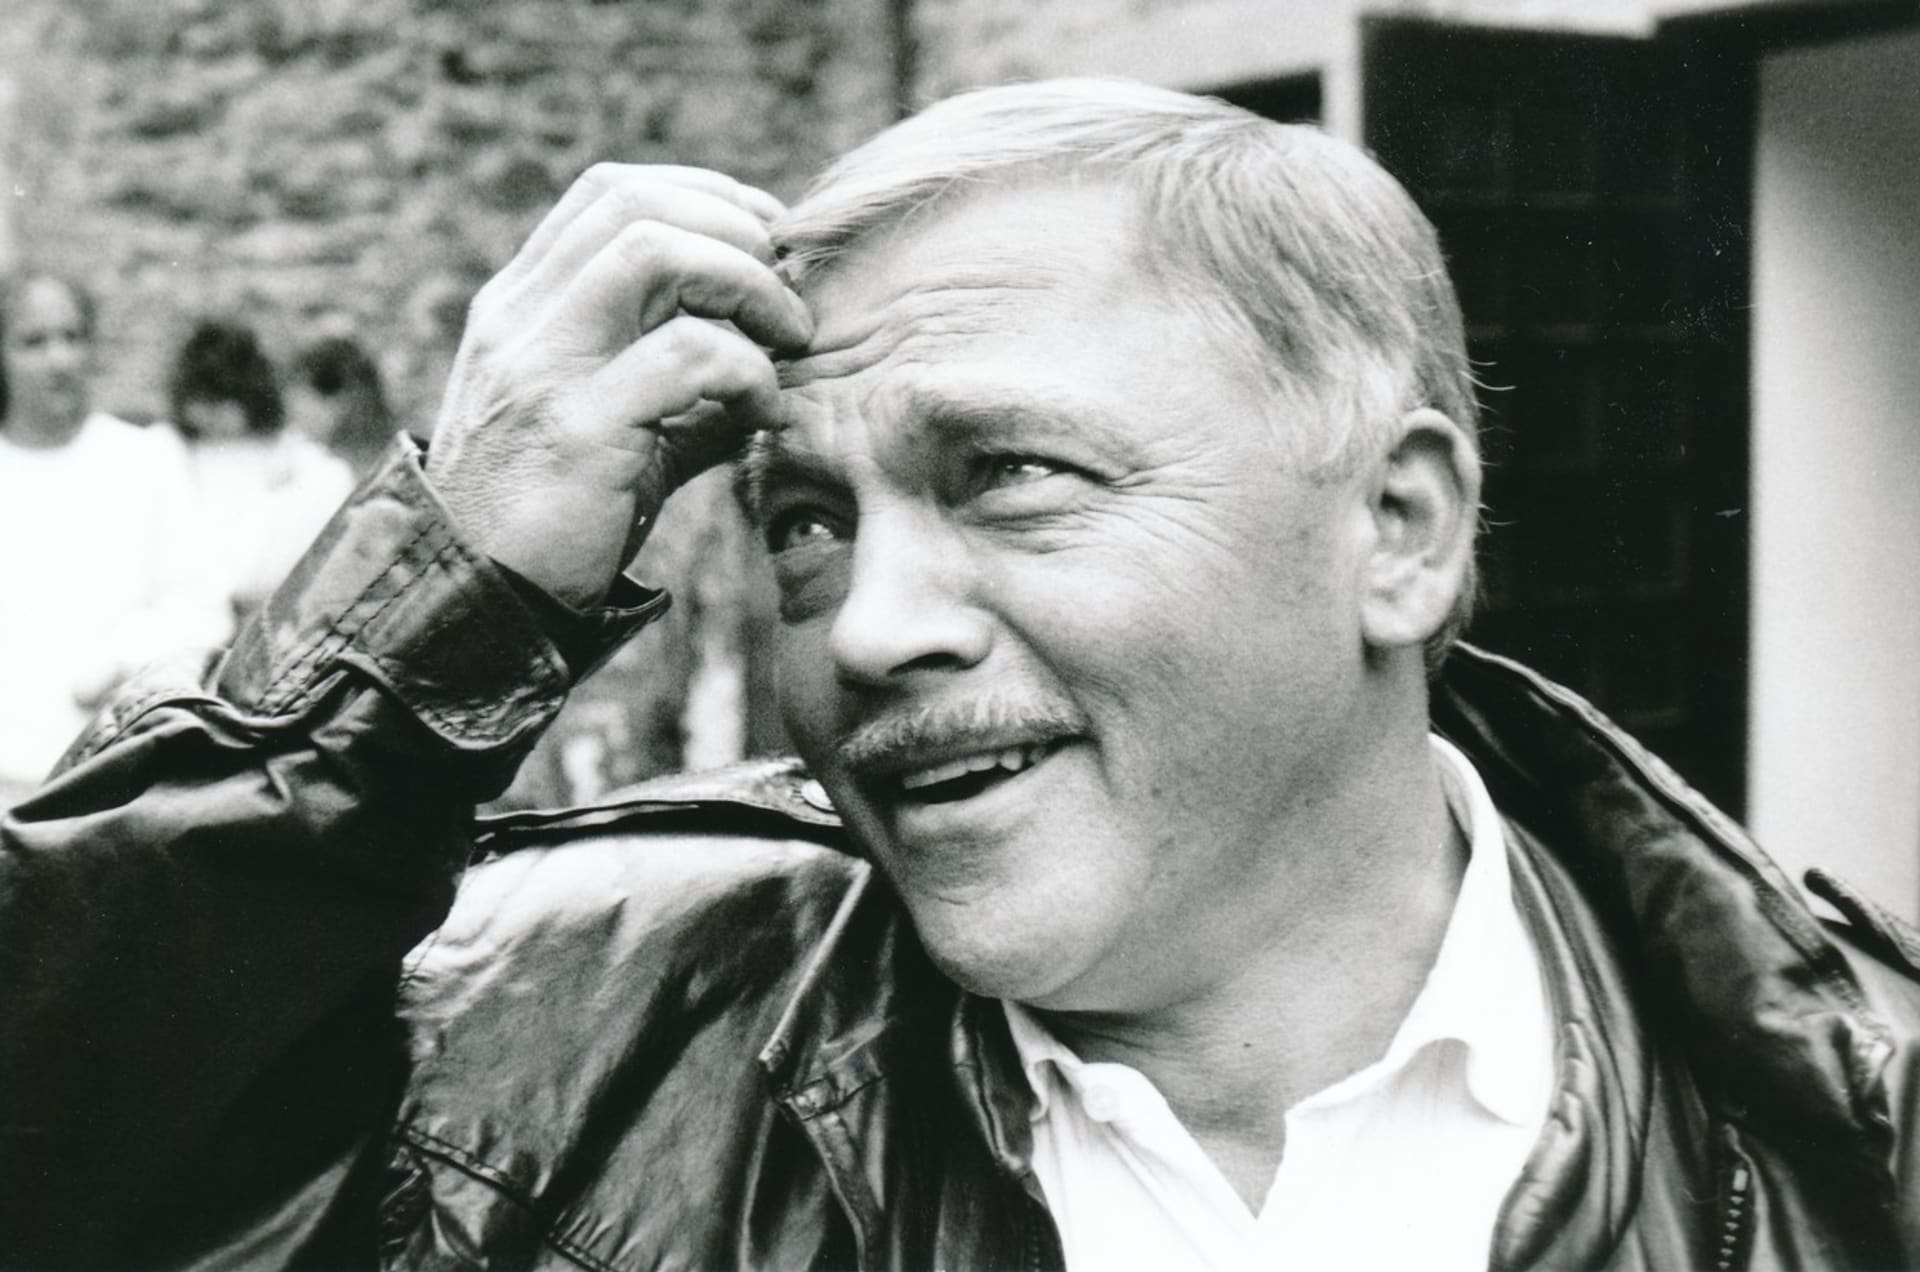 Karel Kryl byl básník a písničkář, hlavní představitel československého protikomunistického protestsongu v letech 1963–1989.